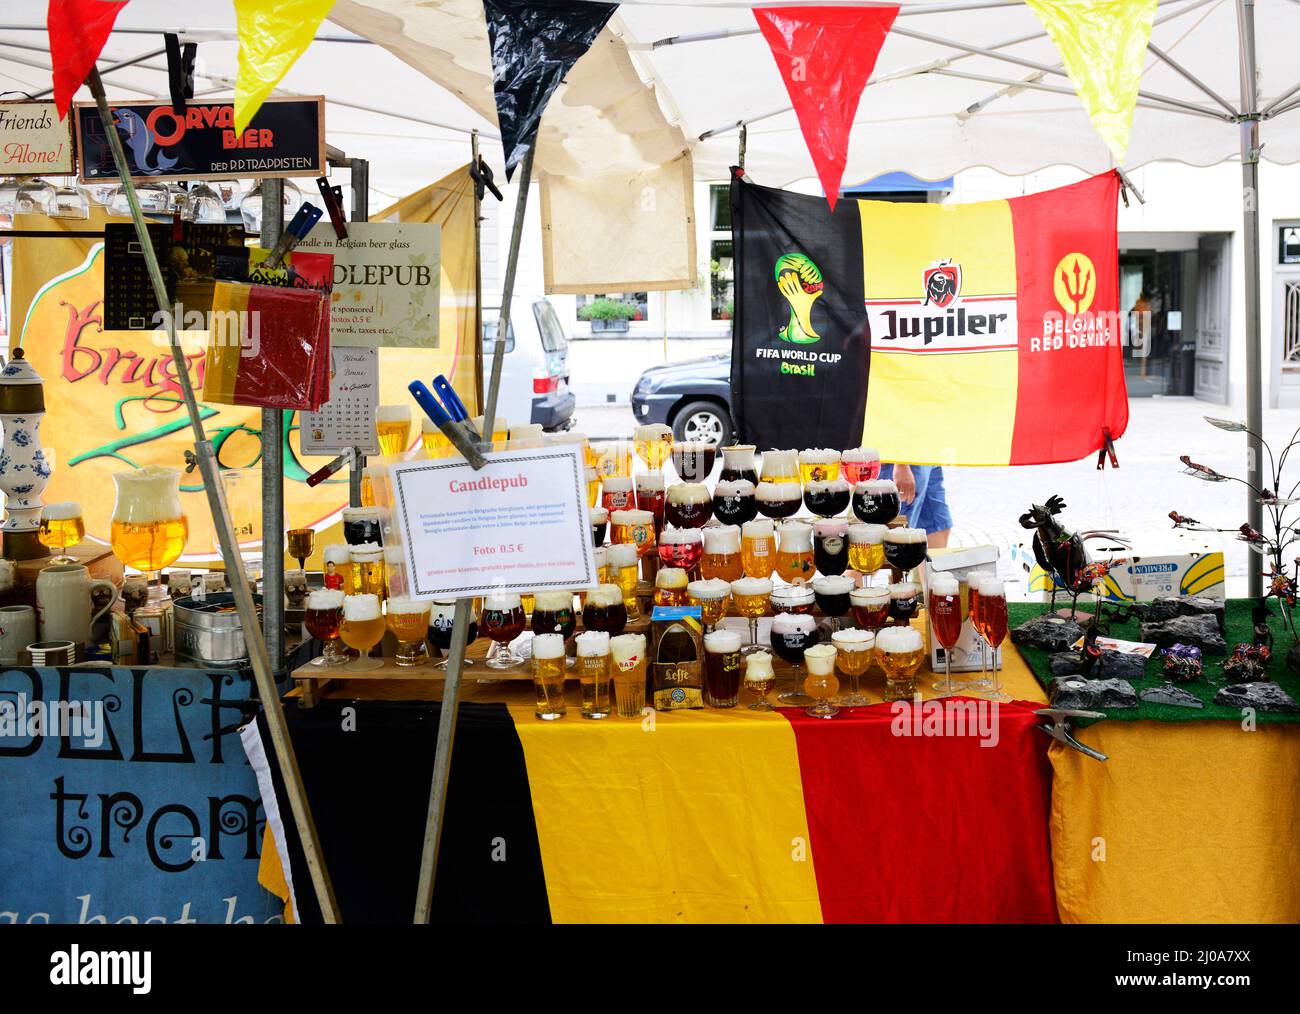 Un vendeur de souvenirs vendant des verres de bière belge à Bruges, belgique. Banque D'Images